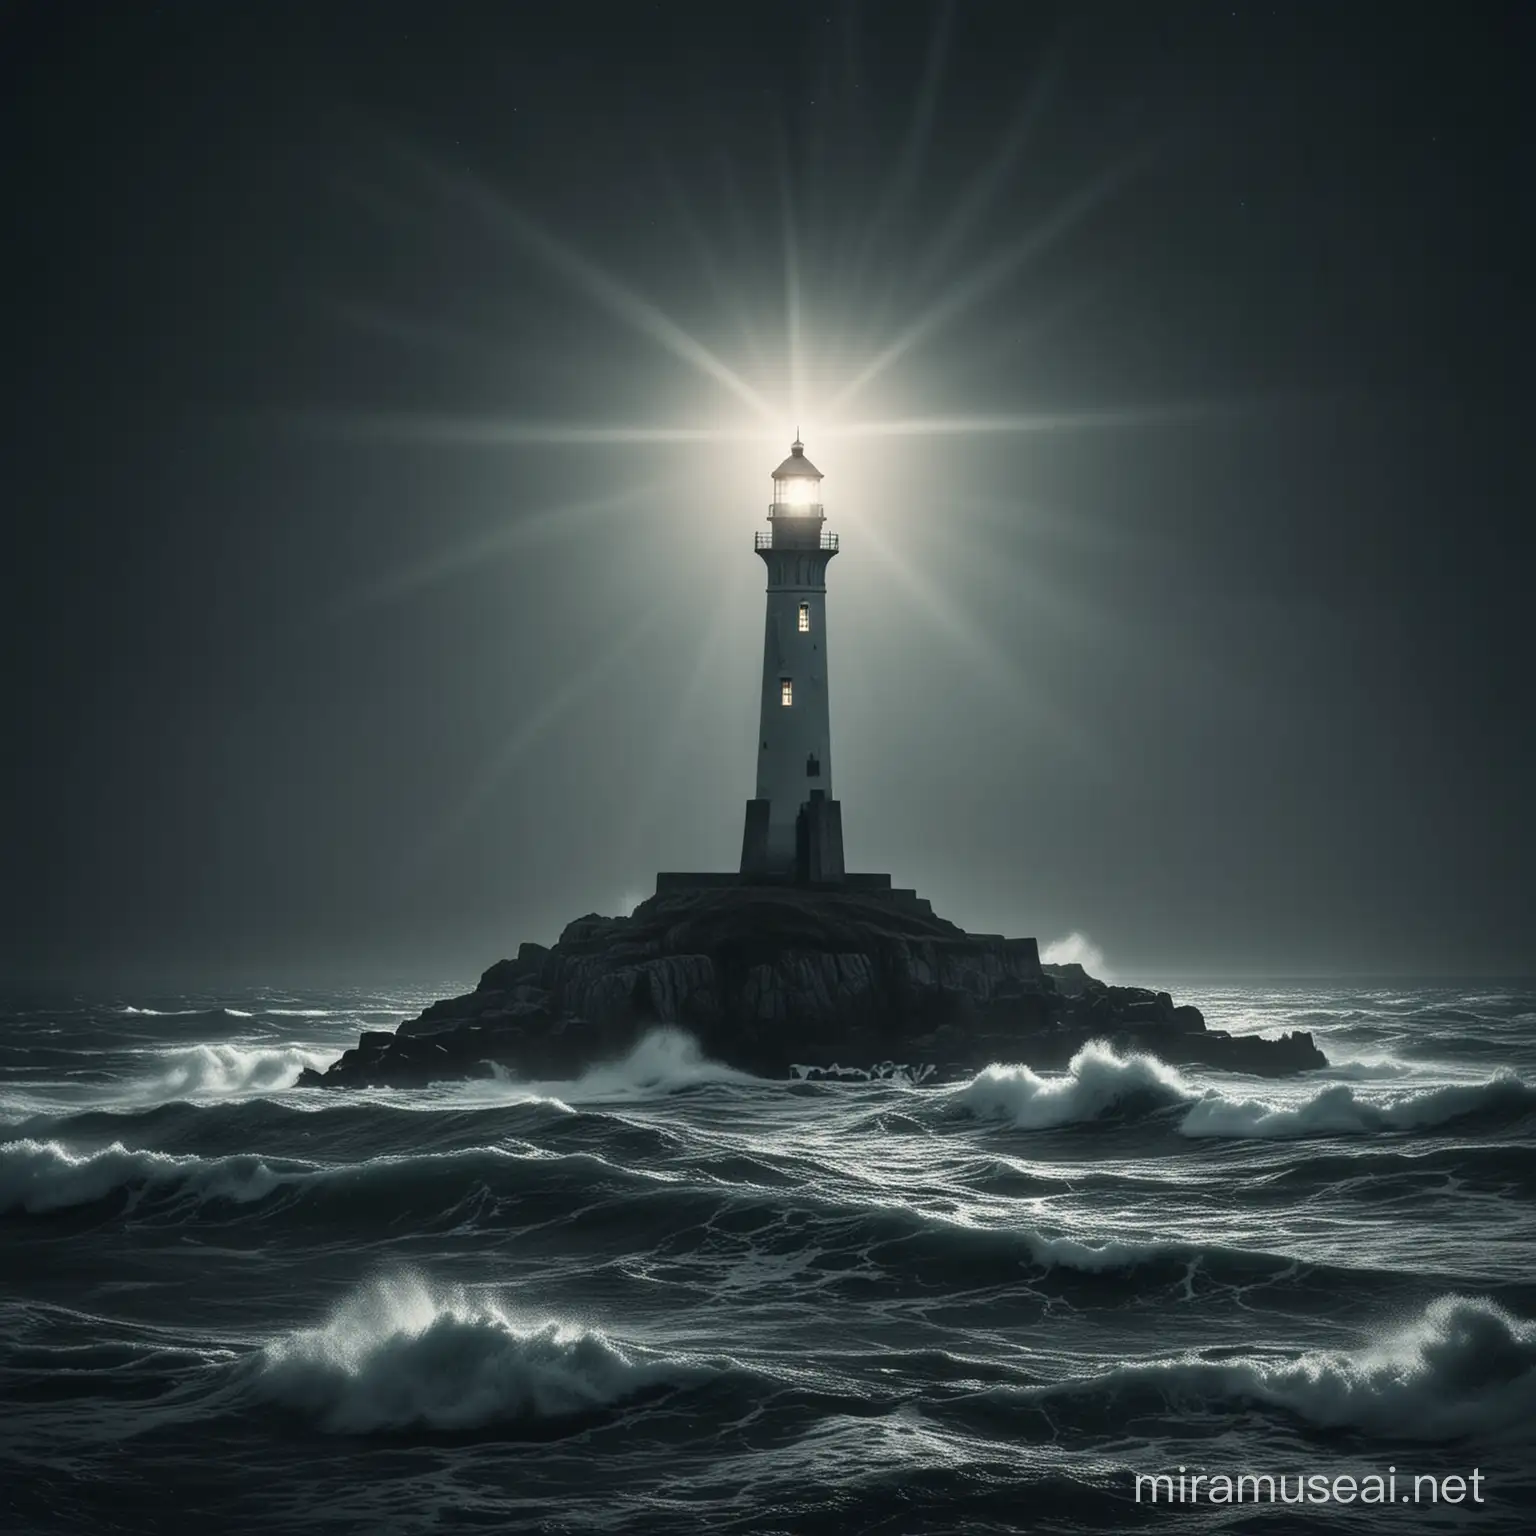 Зображення світлового маяка, який виблискує в темряві та вказує напрямок у морі непевності.